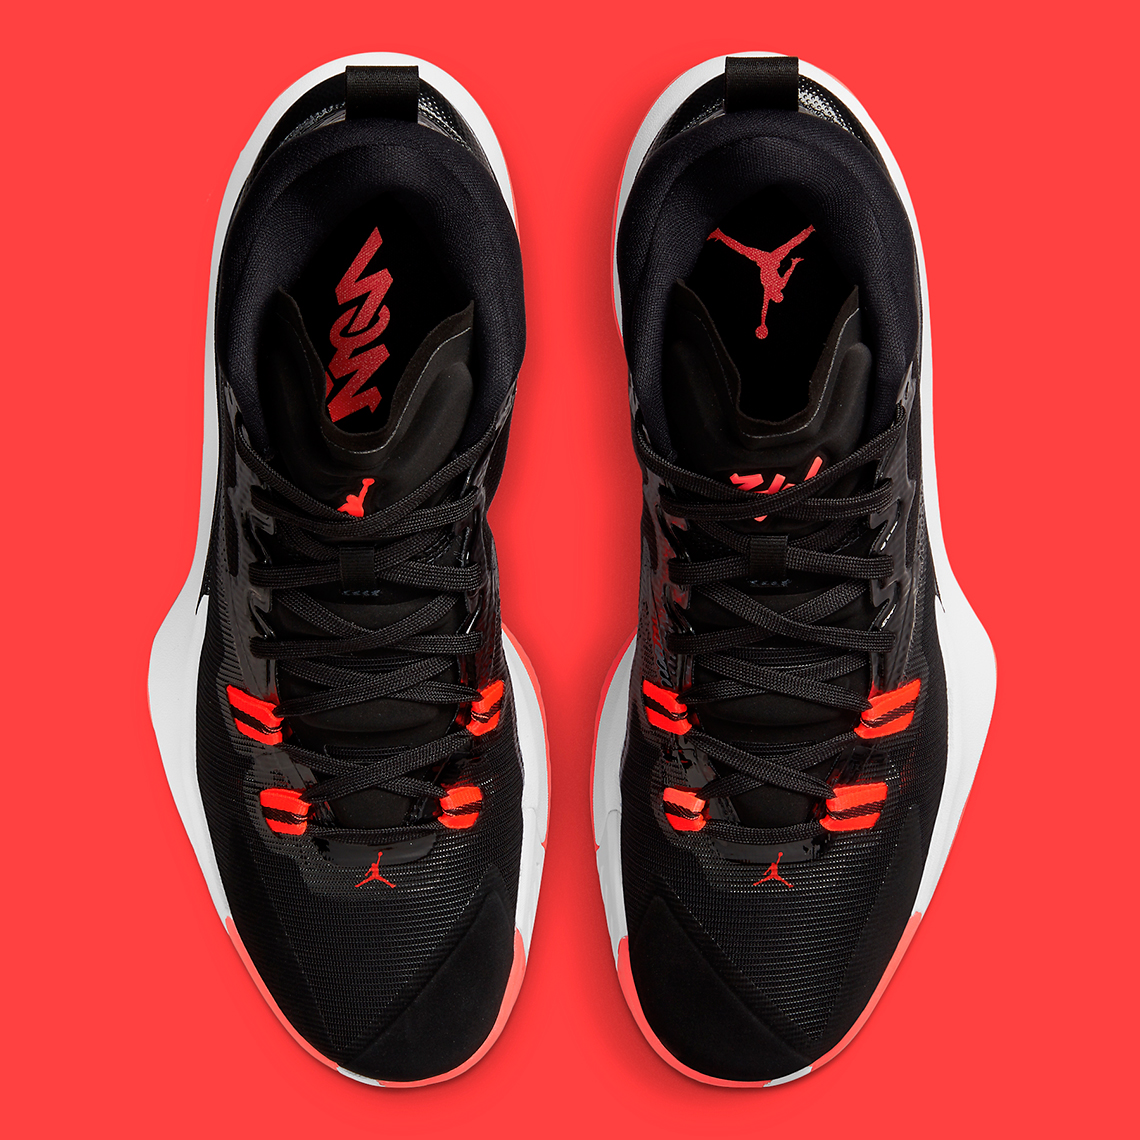 Jordan Zion 1 Black White Bright Crimson DA3130-006 | SneakerNews.com